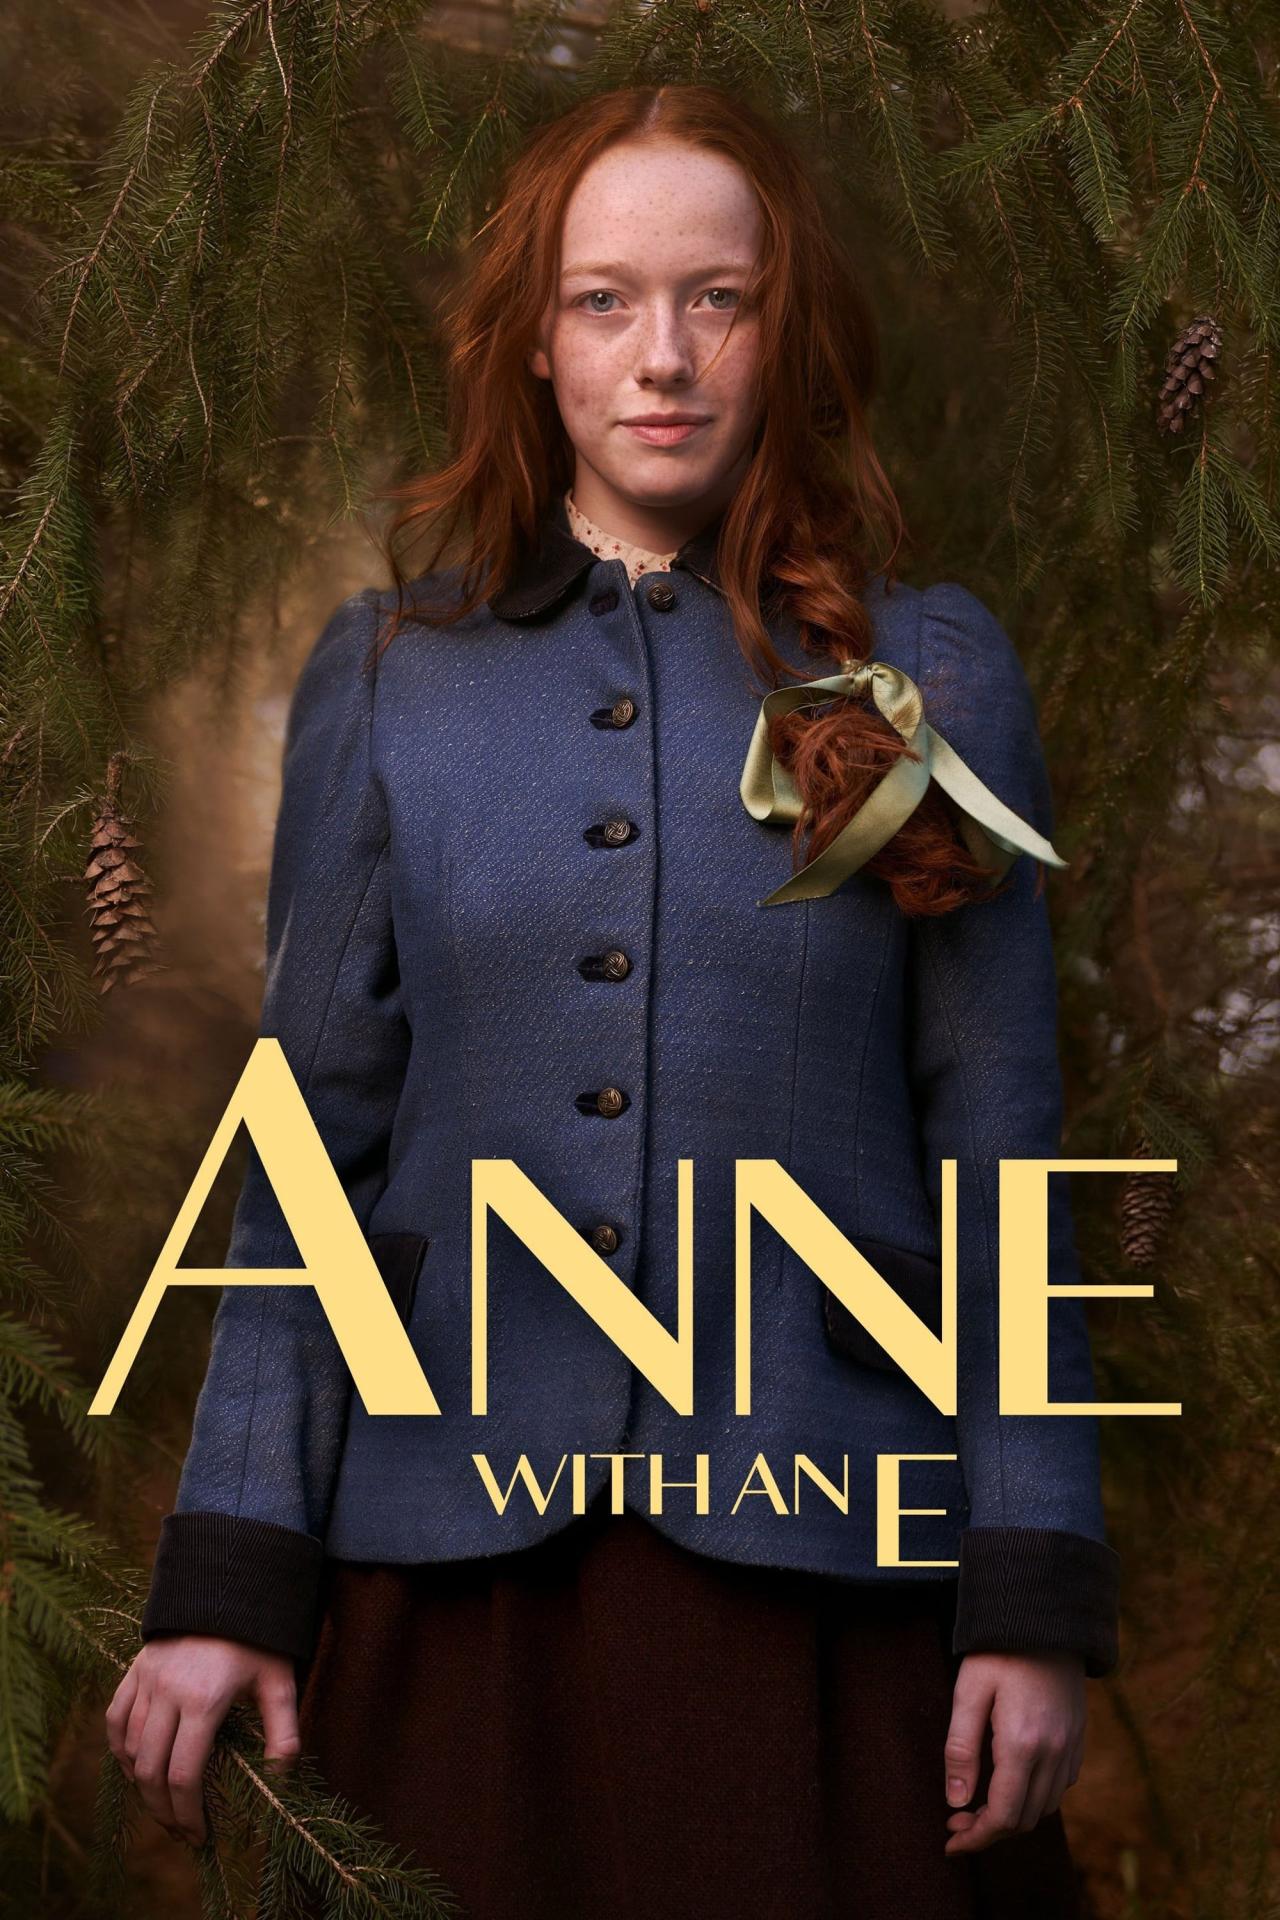 Affiche de la série Anne with an E